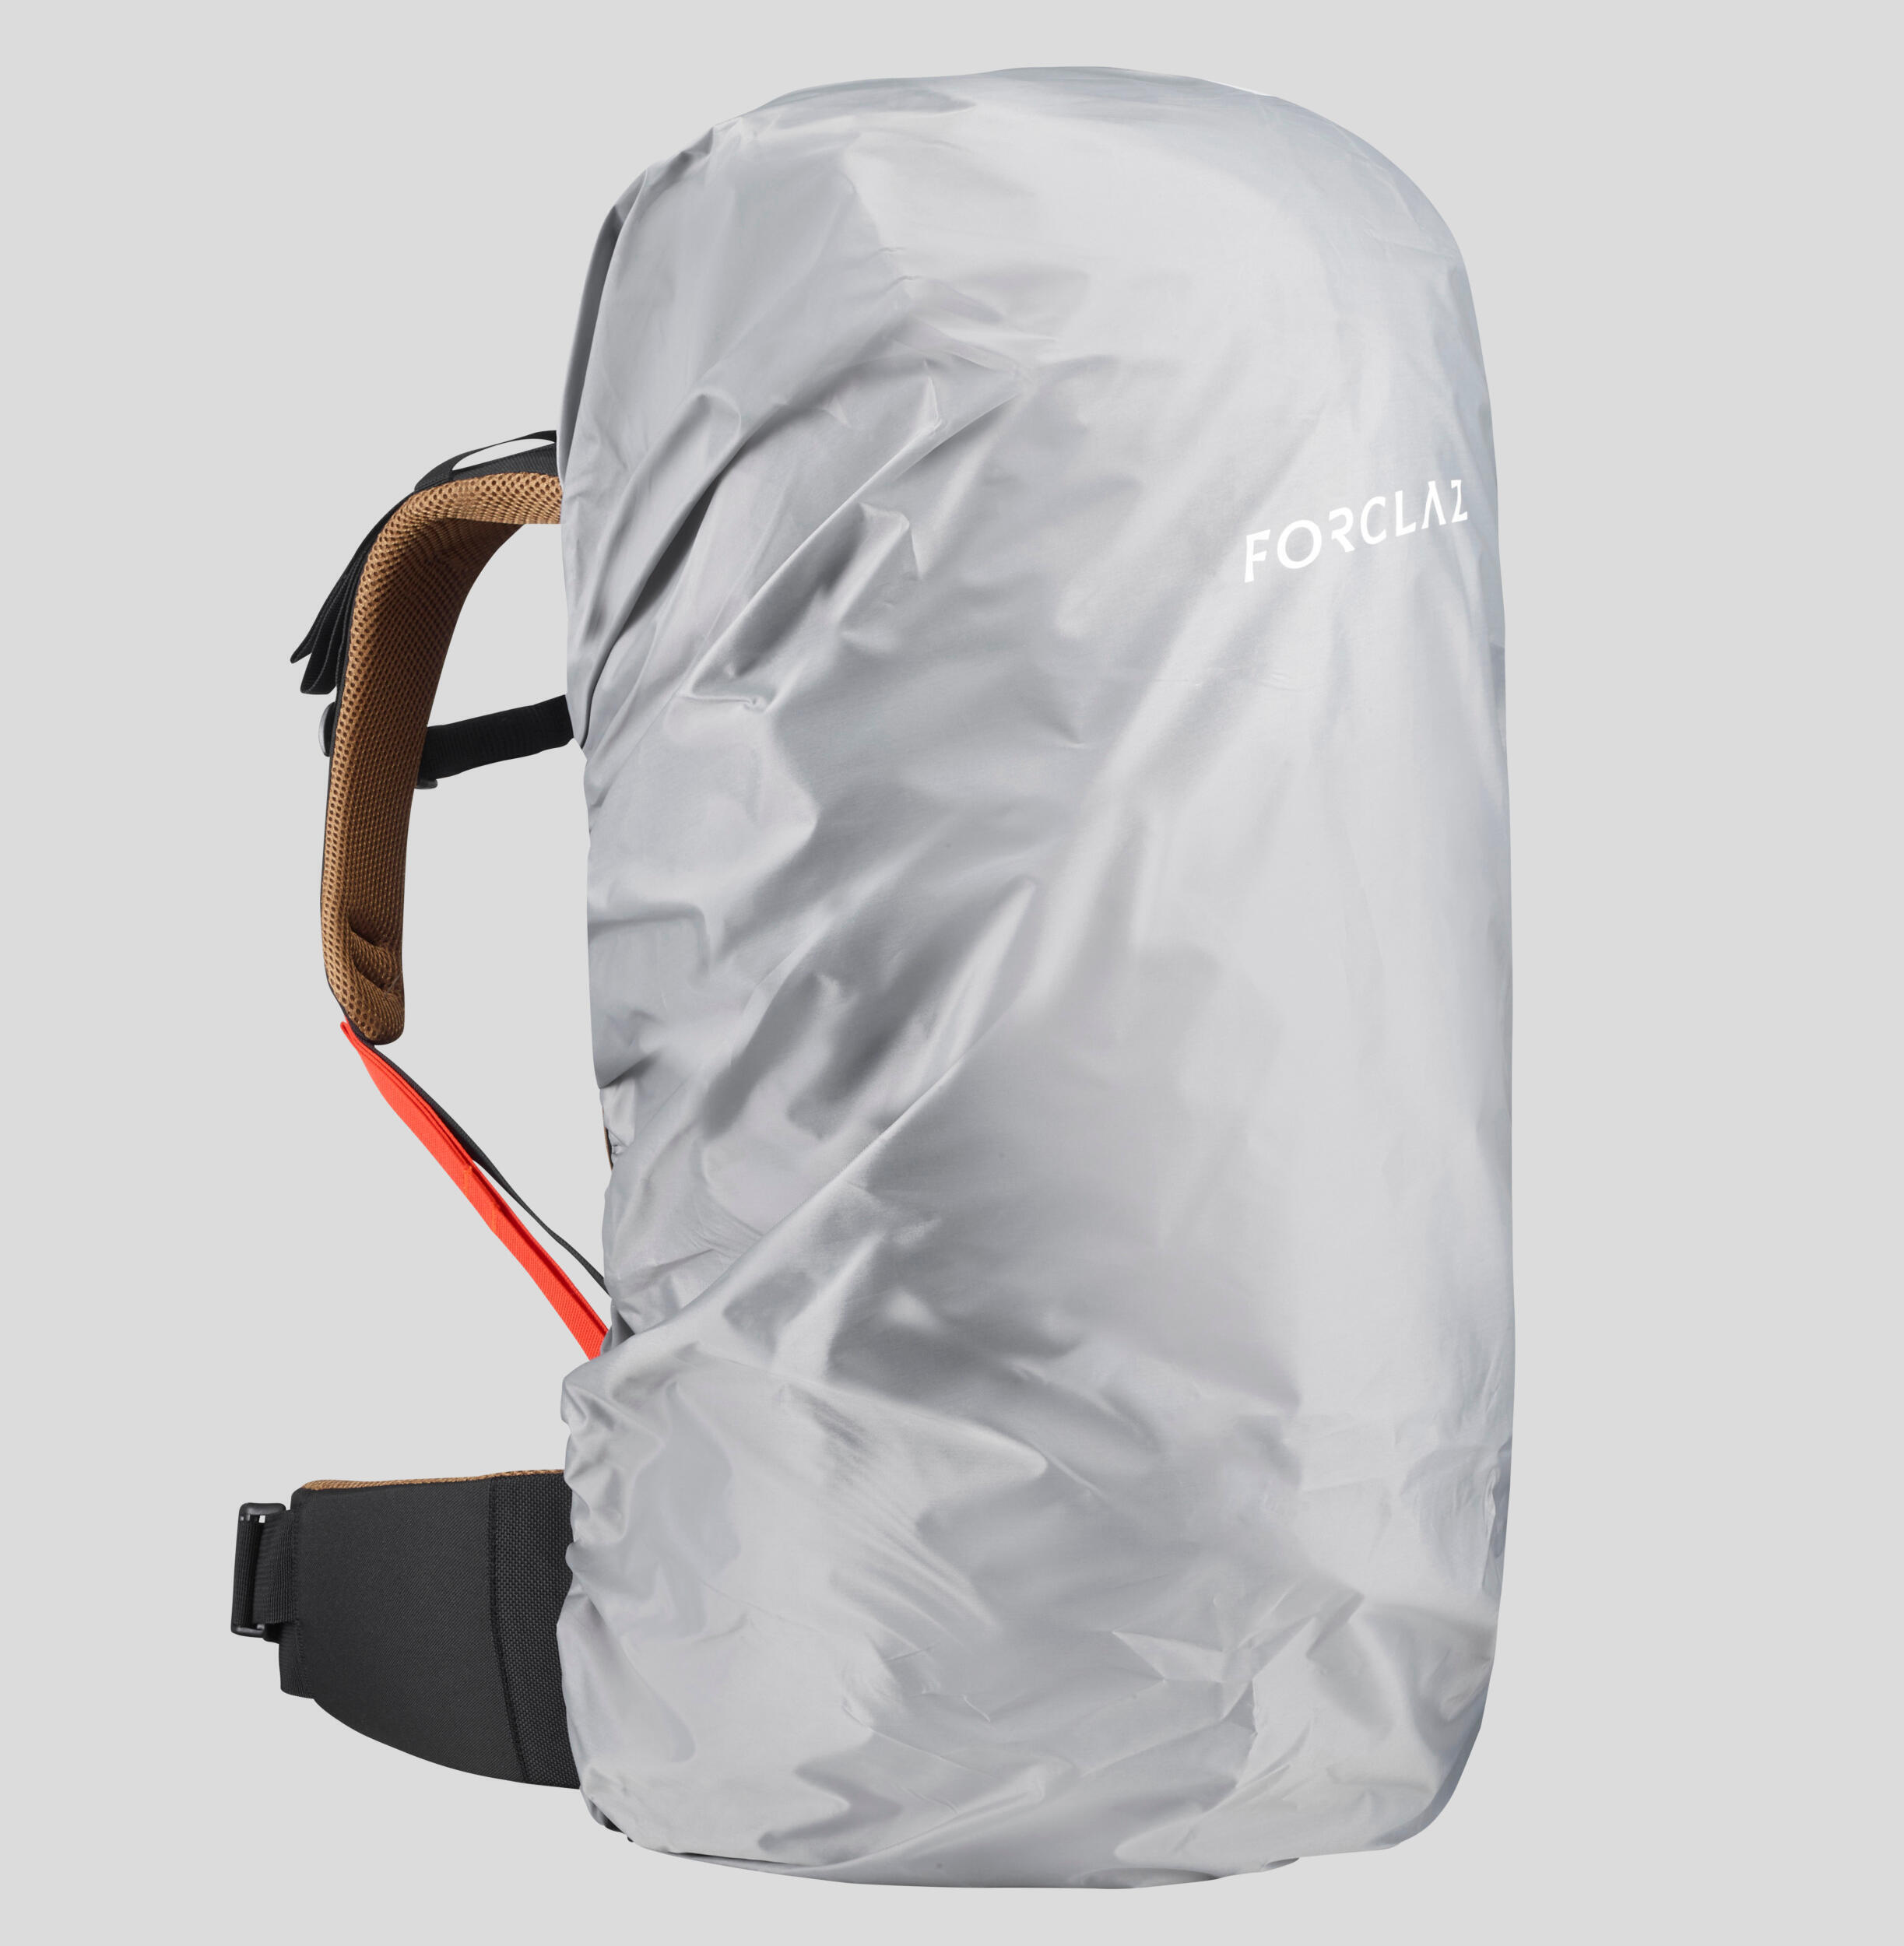 Einige praktische Tipps zur richtigen Nutzung deines Trekking-Rucksacks MT100